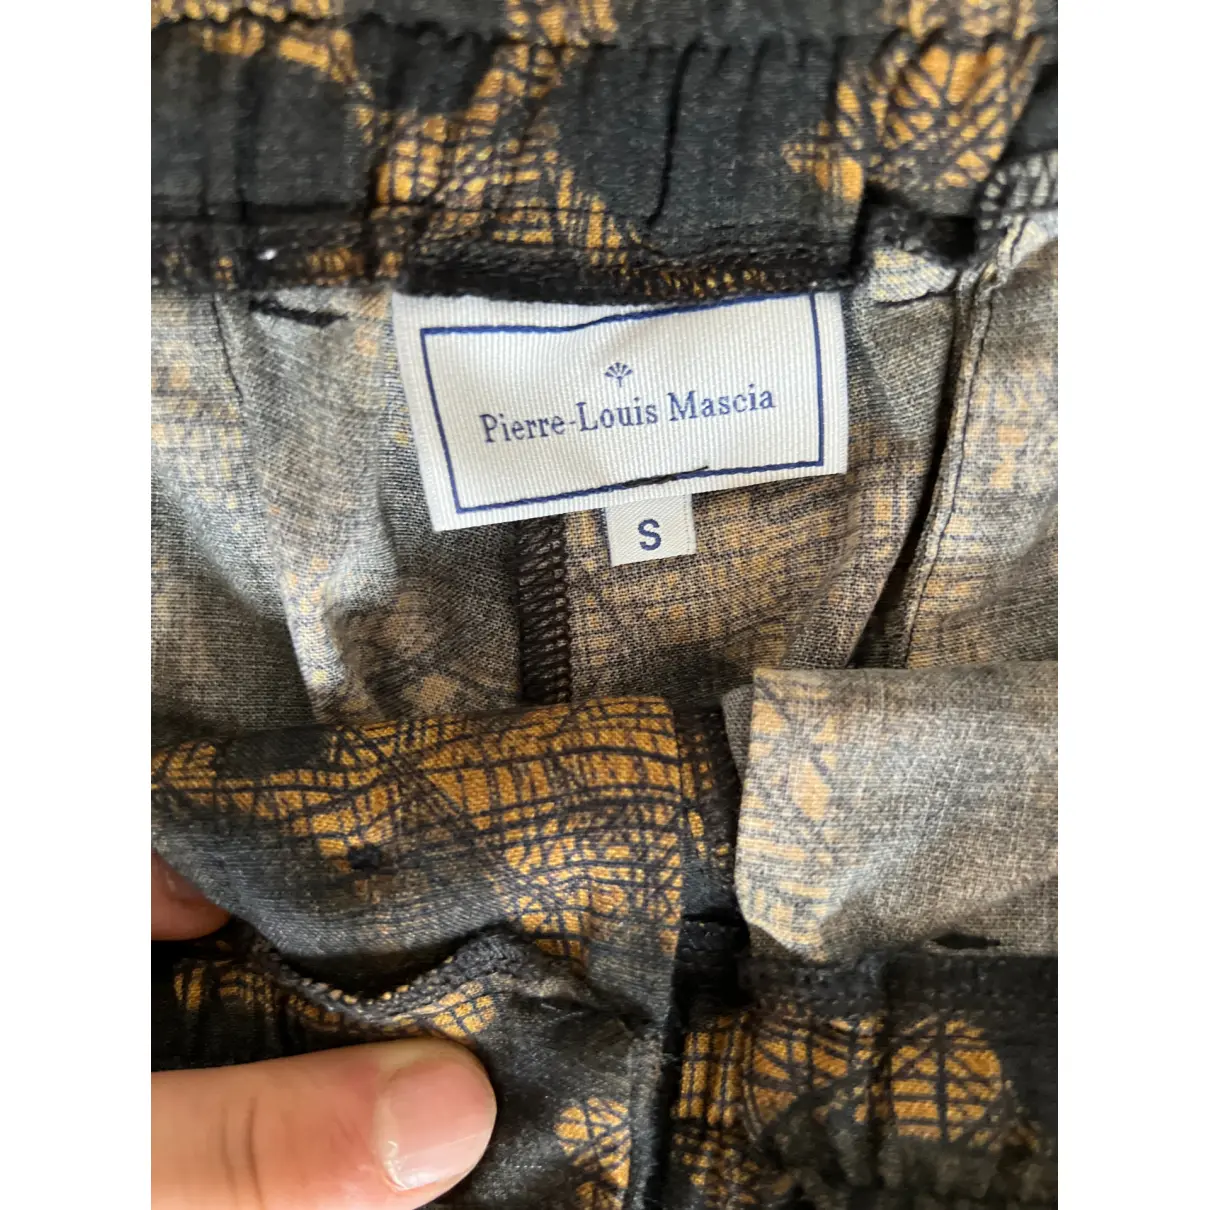 Buy Pierre-Louis Mascia Wool trousers online